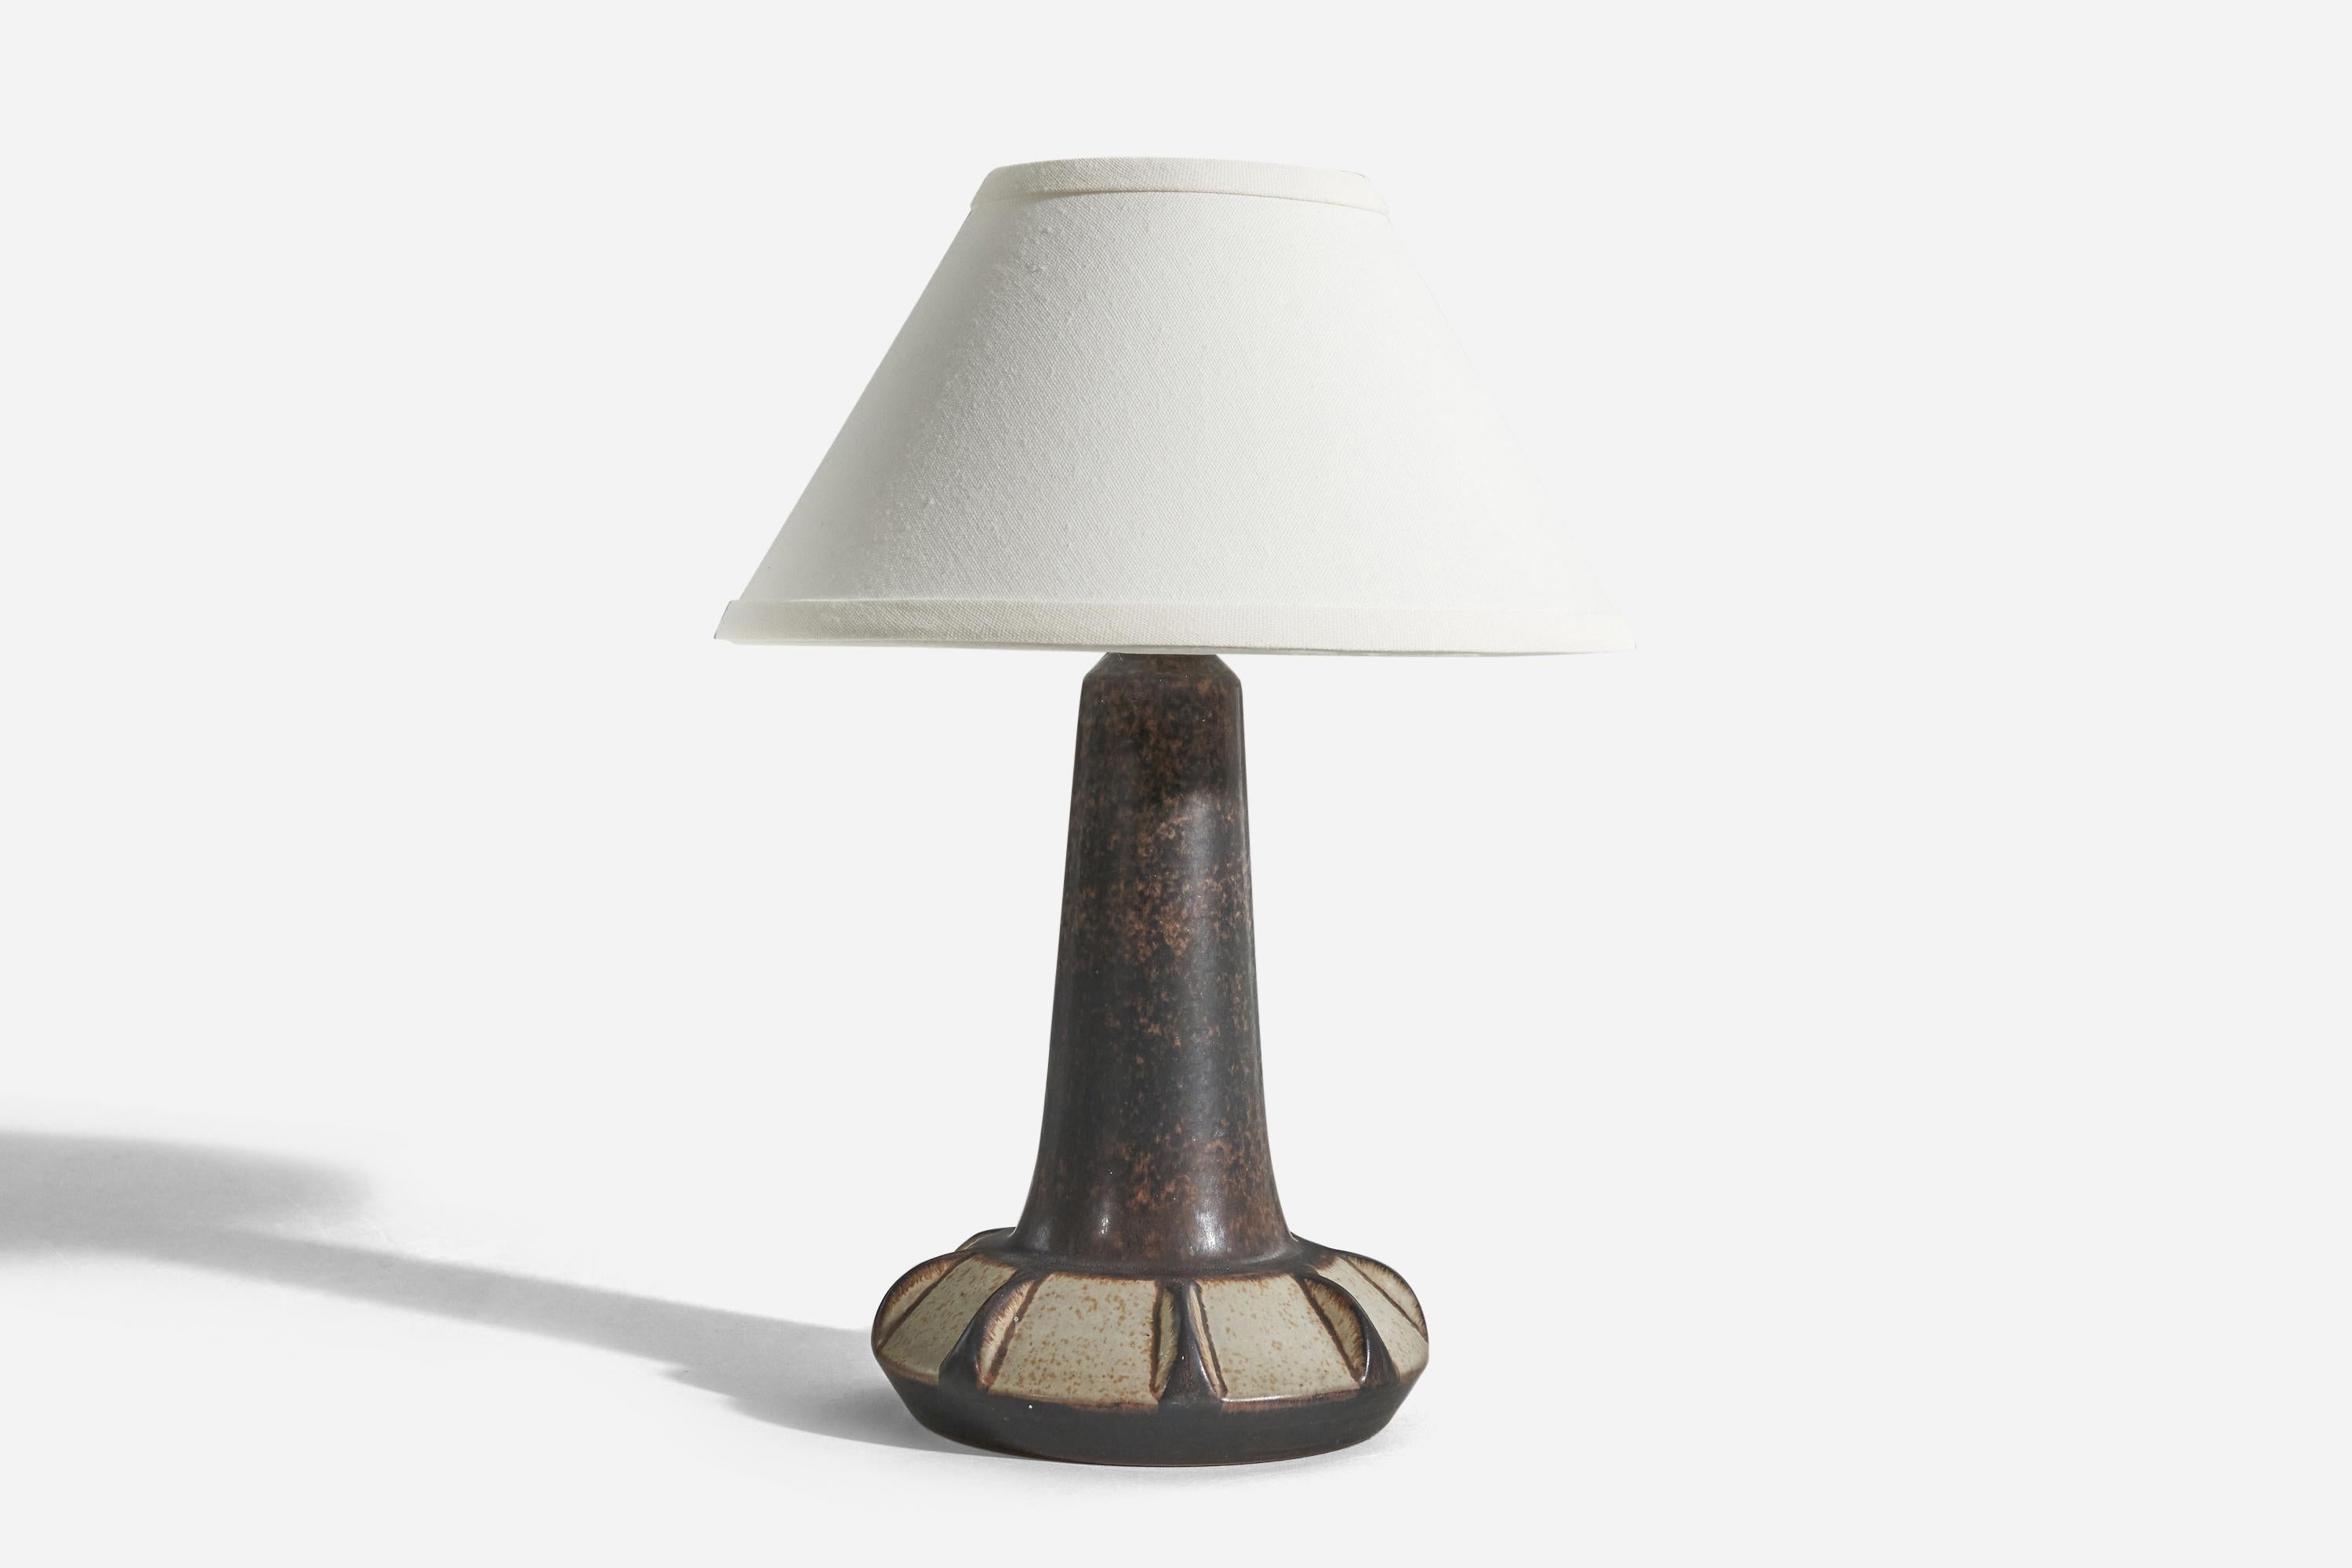 Eine braune, glasierte Steingut-Tischlampe, entworfen und hergestellt von Michael Andersen Keramik, Dänemark, 1960er Jahre.

Verkauft ohne Lampenschirm. 
Abmessungen der Lampe (Zoll) : 11.25 x 6,25 x 6,25 (H x B x T)
Abmessungen des Schirms